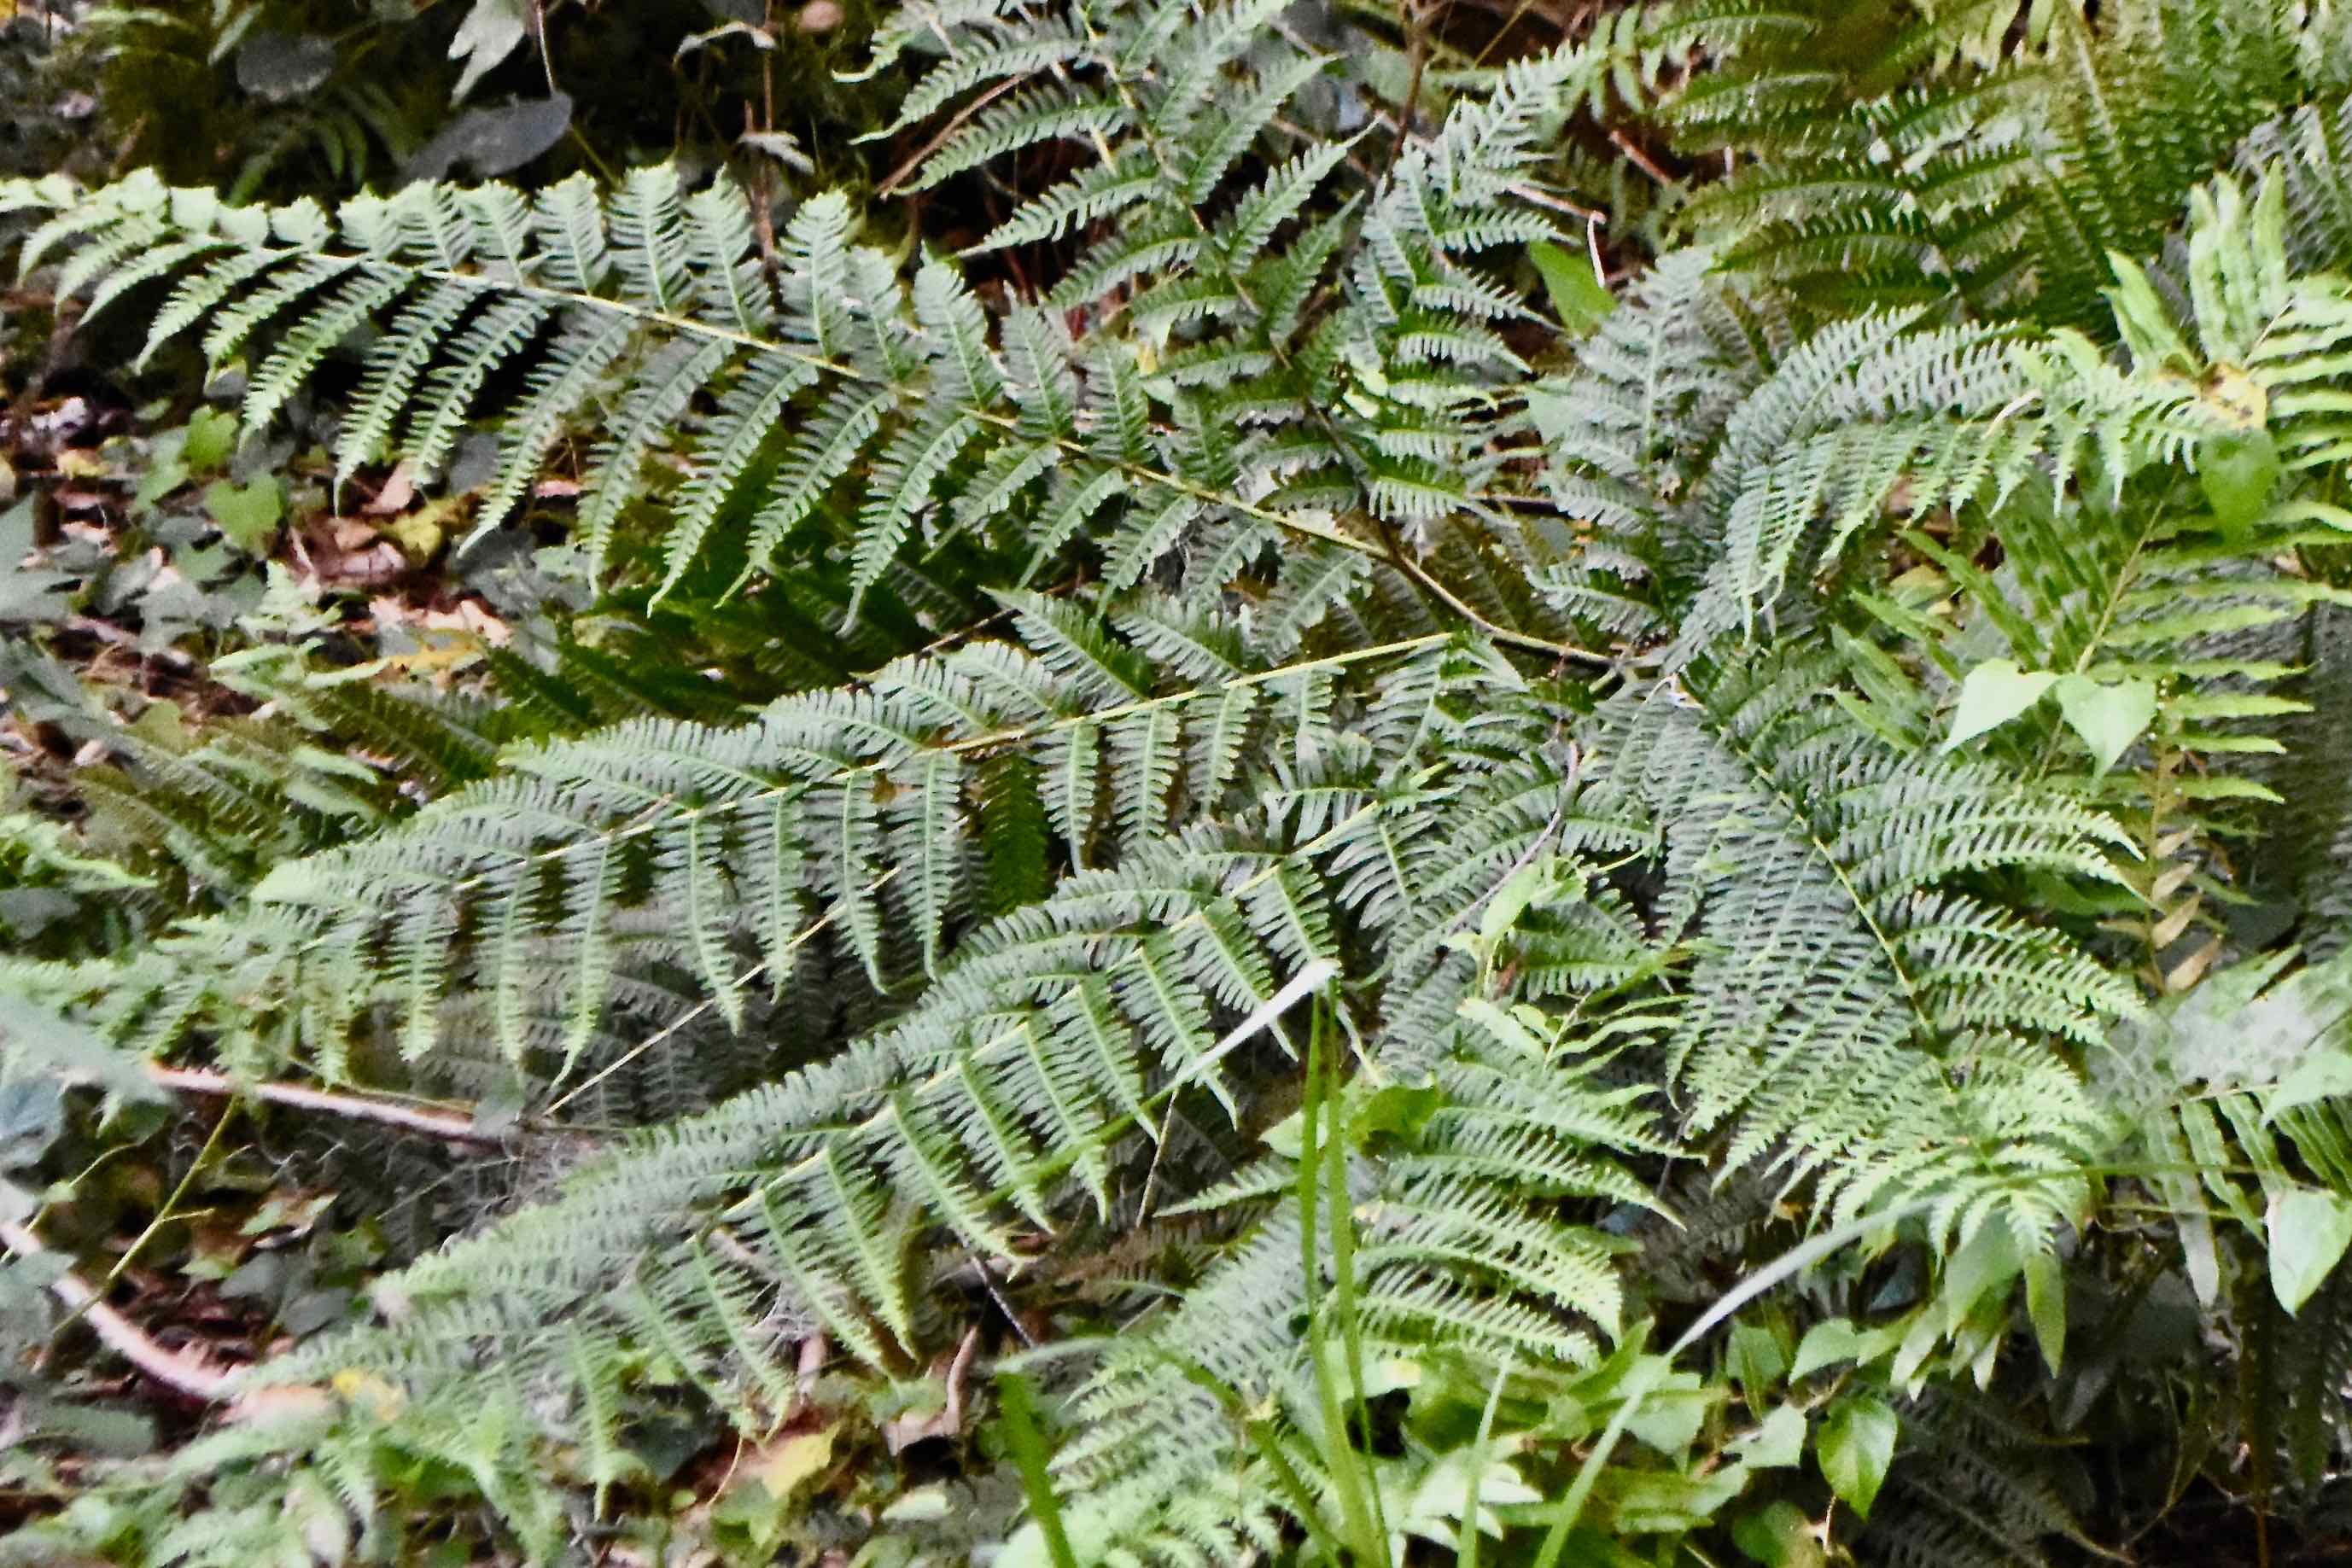 tailed bracken fern